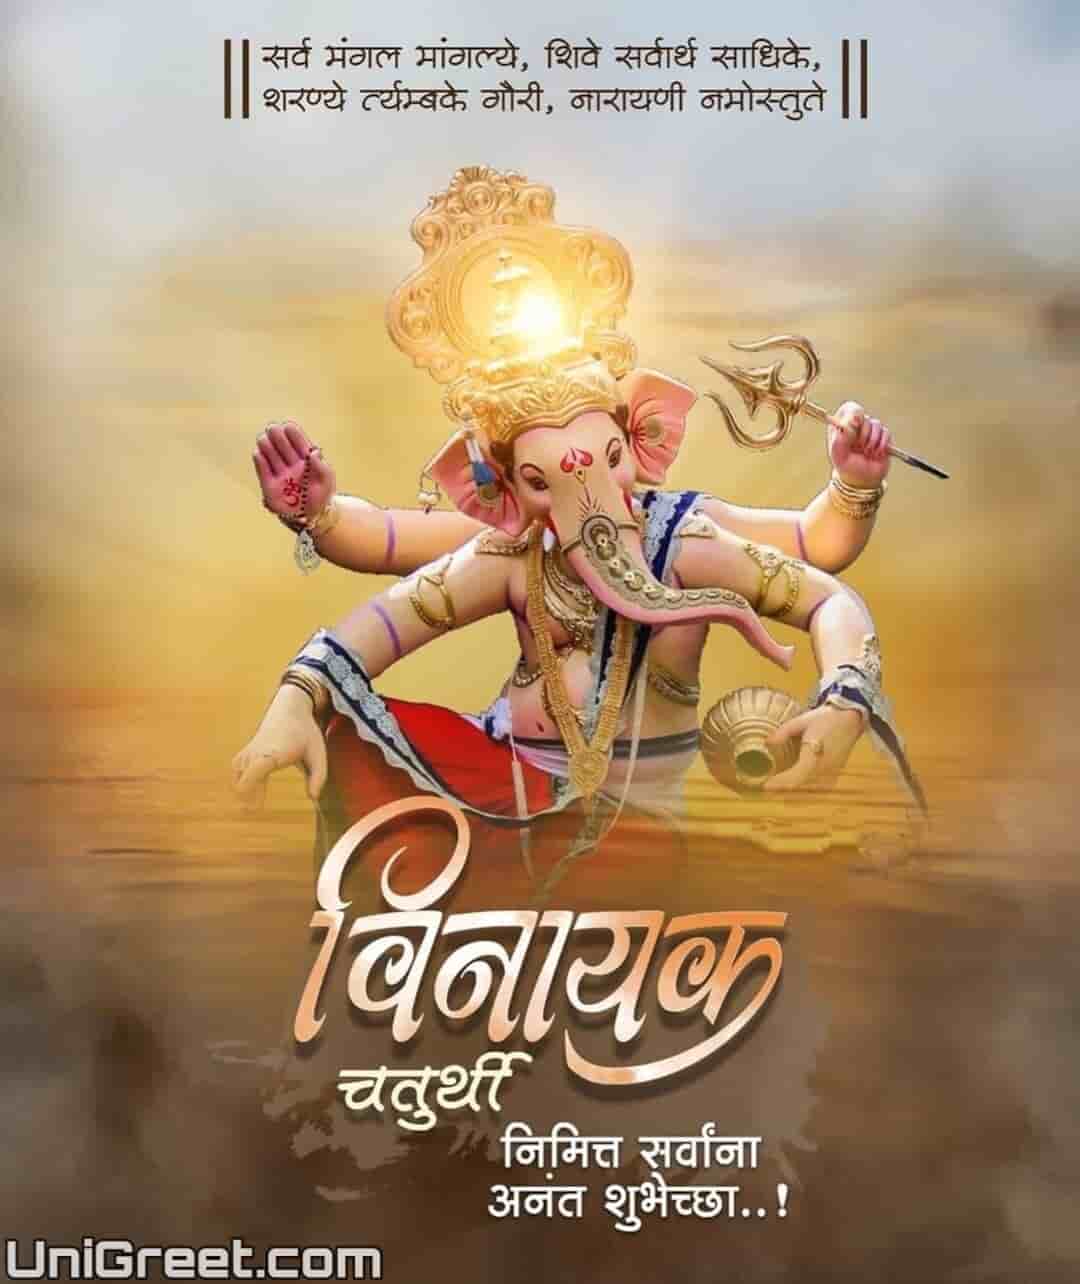 happy Vinayaka chaturthi images in marathi language